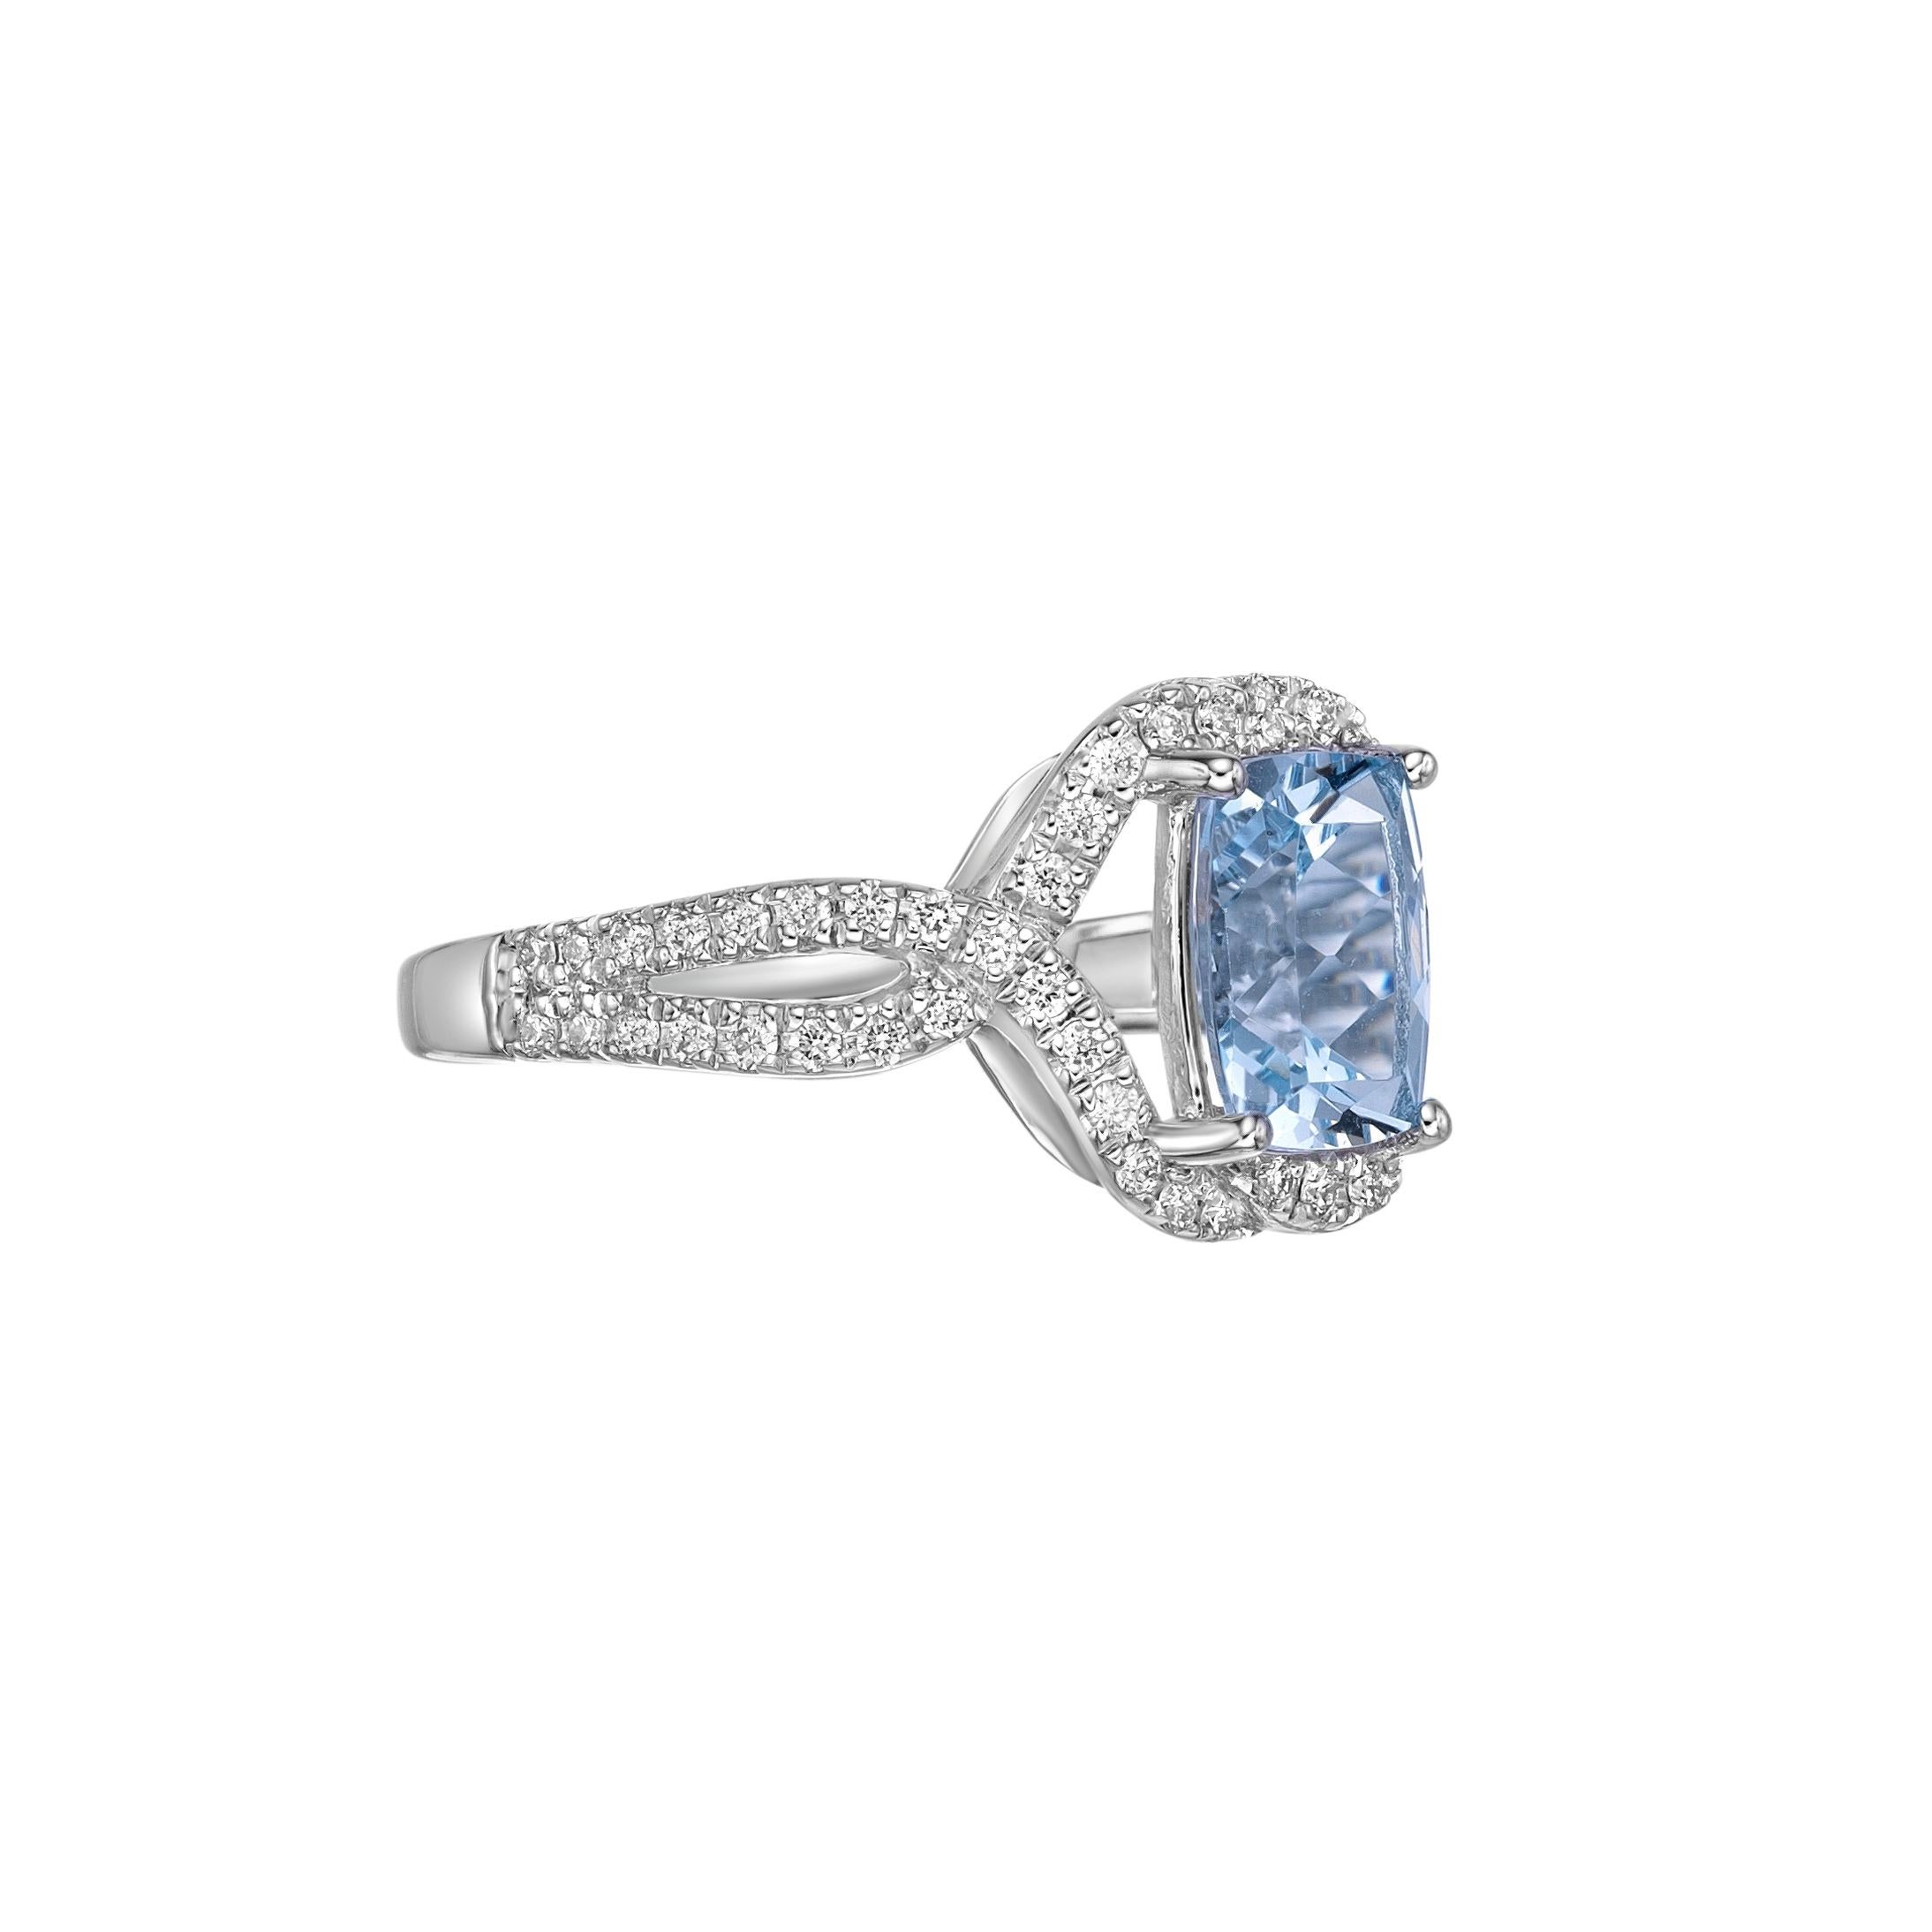 Diese Kollektion bietet eine Reihe von Aquamarinen mit einem eisblauen Farbton, der so cool ist, wie er nur sein kann! Der mit Diamanten besetzte Ring ist aus Weißgold gefertigt und präsentiert sich klassisch und elegant.
  
Aquamarin Fancy Ring in